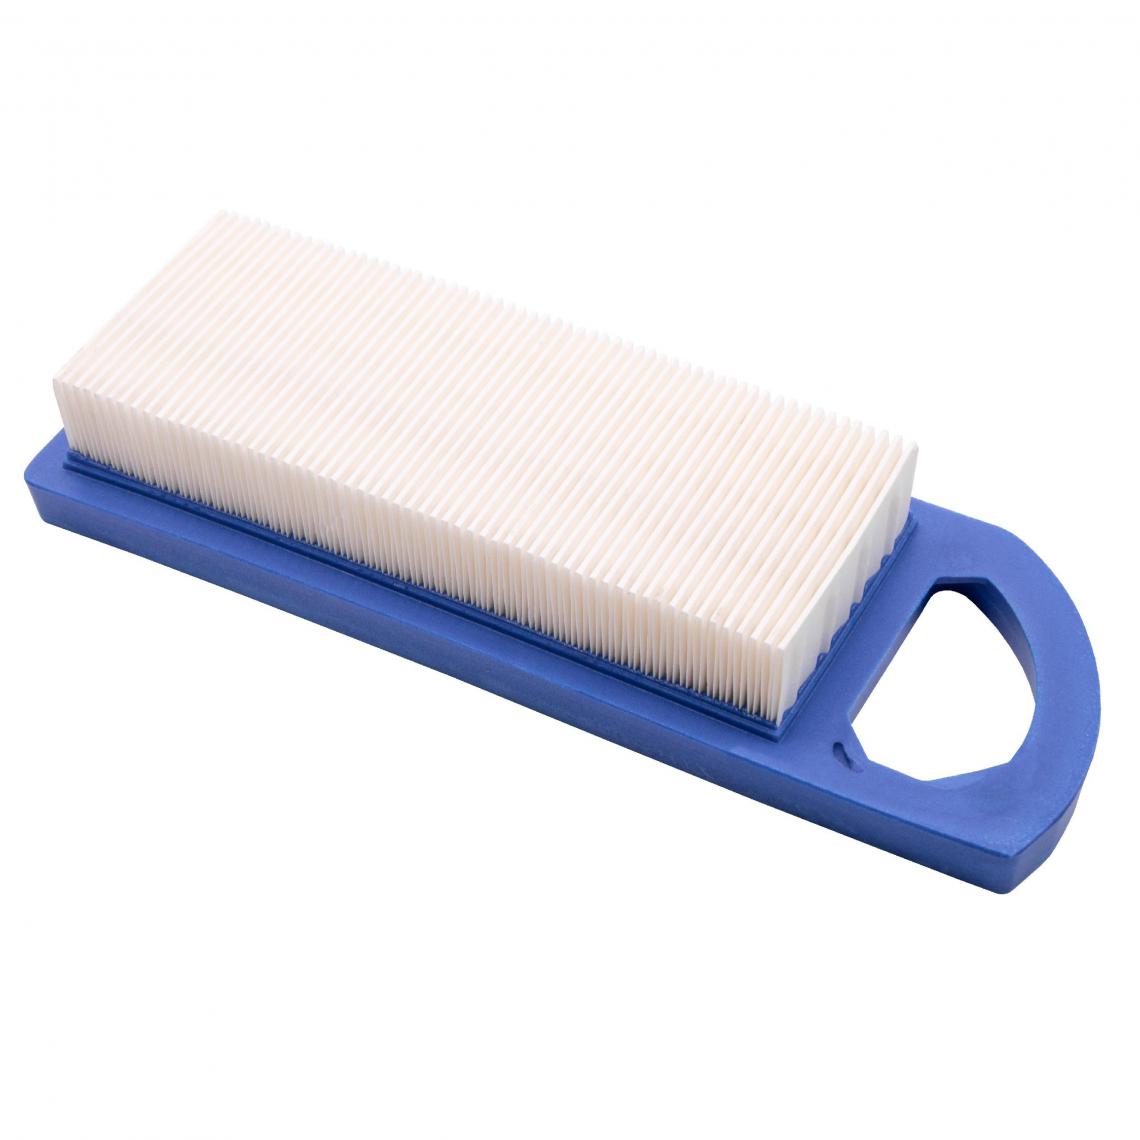 Vhbw - vhbw Filtre à air de rechange bleu, blanc remplace Husqvarna 578451202, GY20573, M149171 pour tondeuse à gazon; 18 x 8 x 3,5cm - Accessoires tondeuses